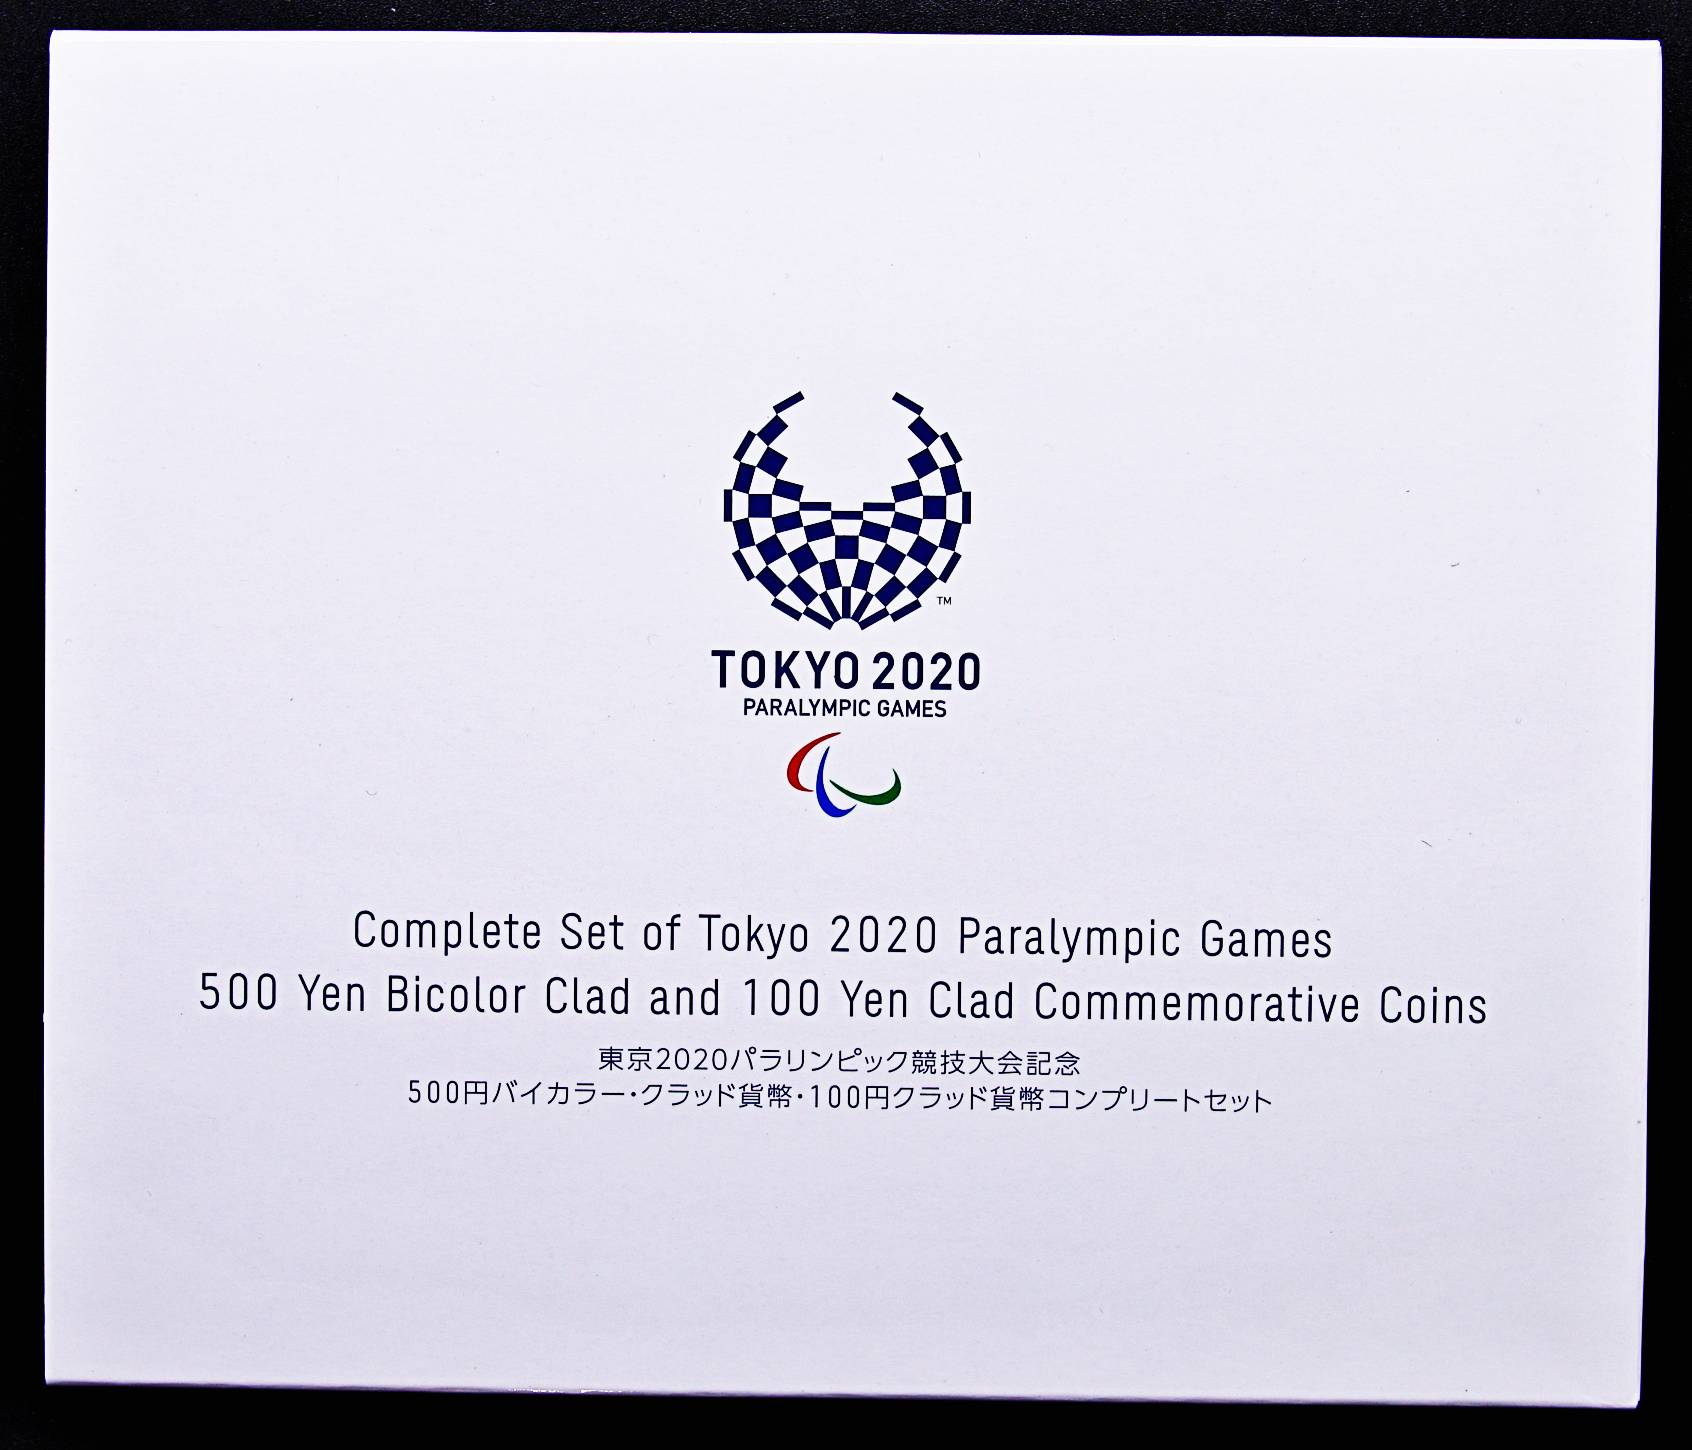 東京2020パラリンピック競技大会記念 500円バイカラー・クラッド貨幣